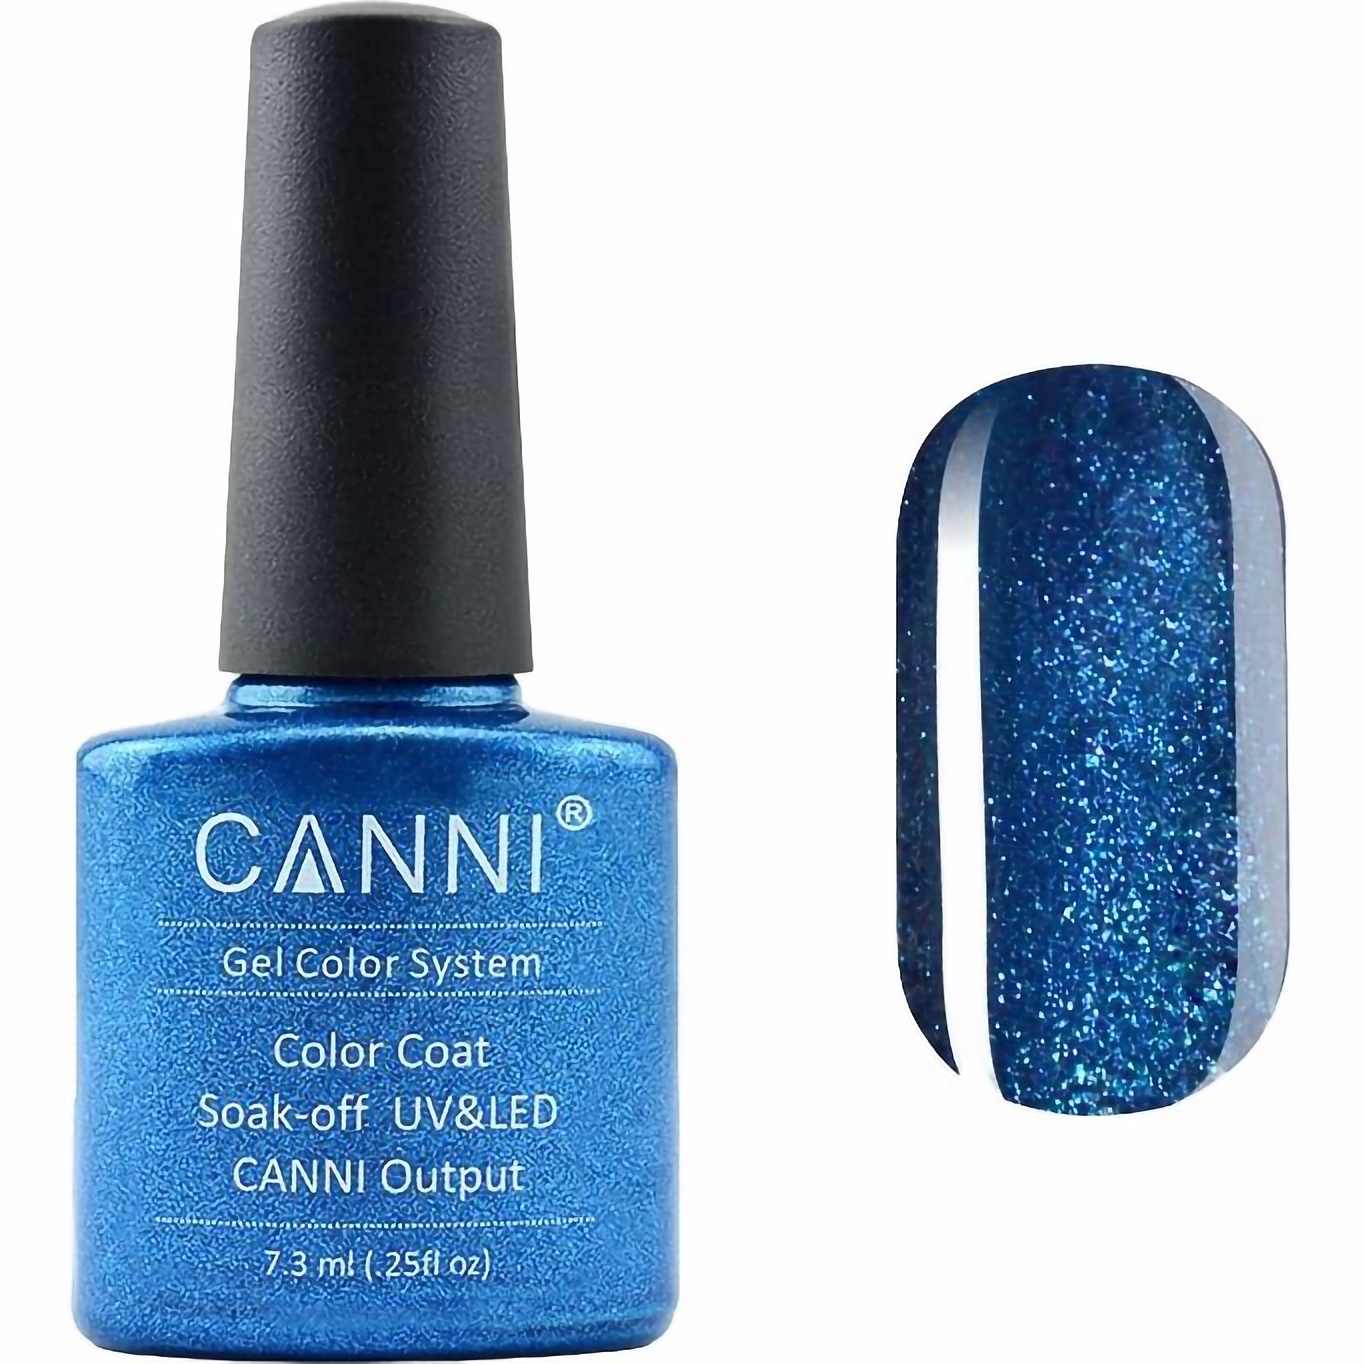 Гель-лак Canni Color Coat Soak-off UV&LED 194 синий с микроблеском 7.3 мл - фото 1